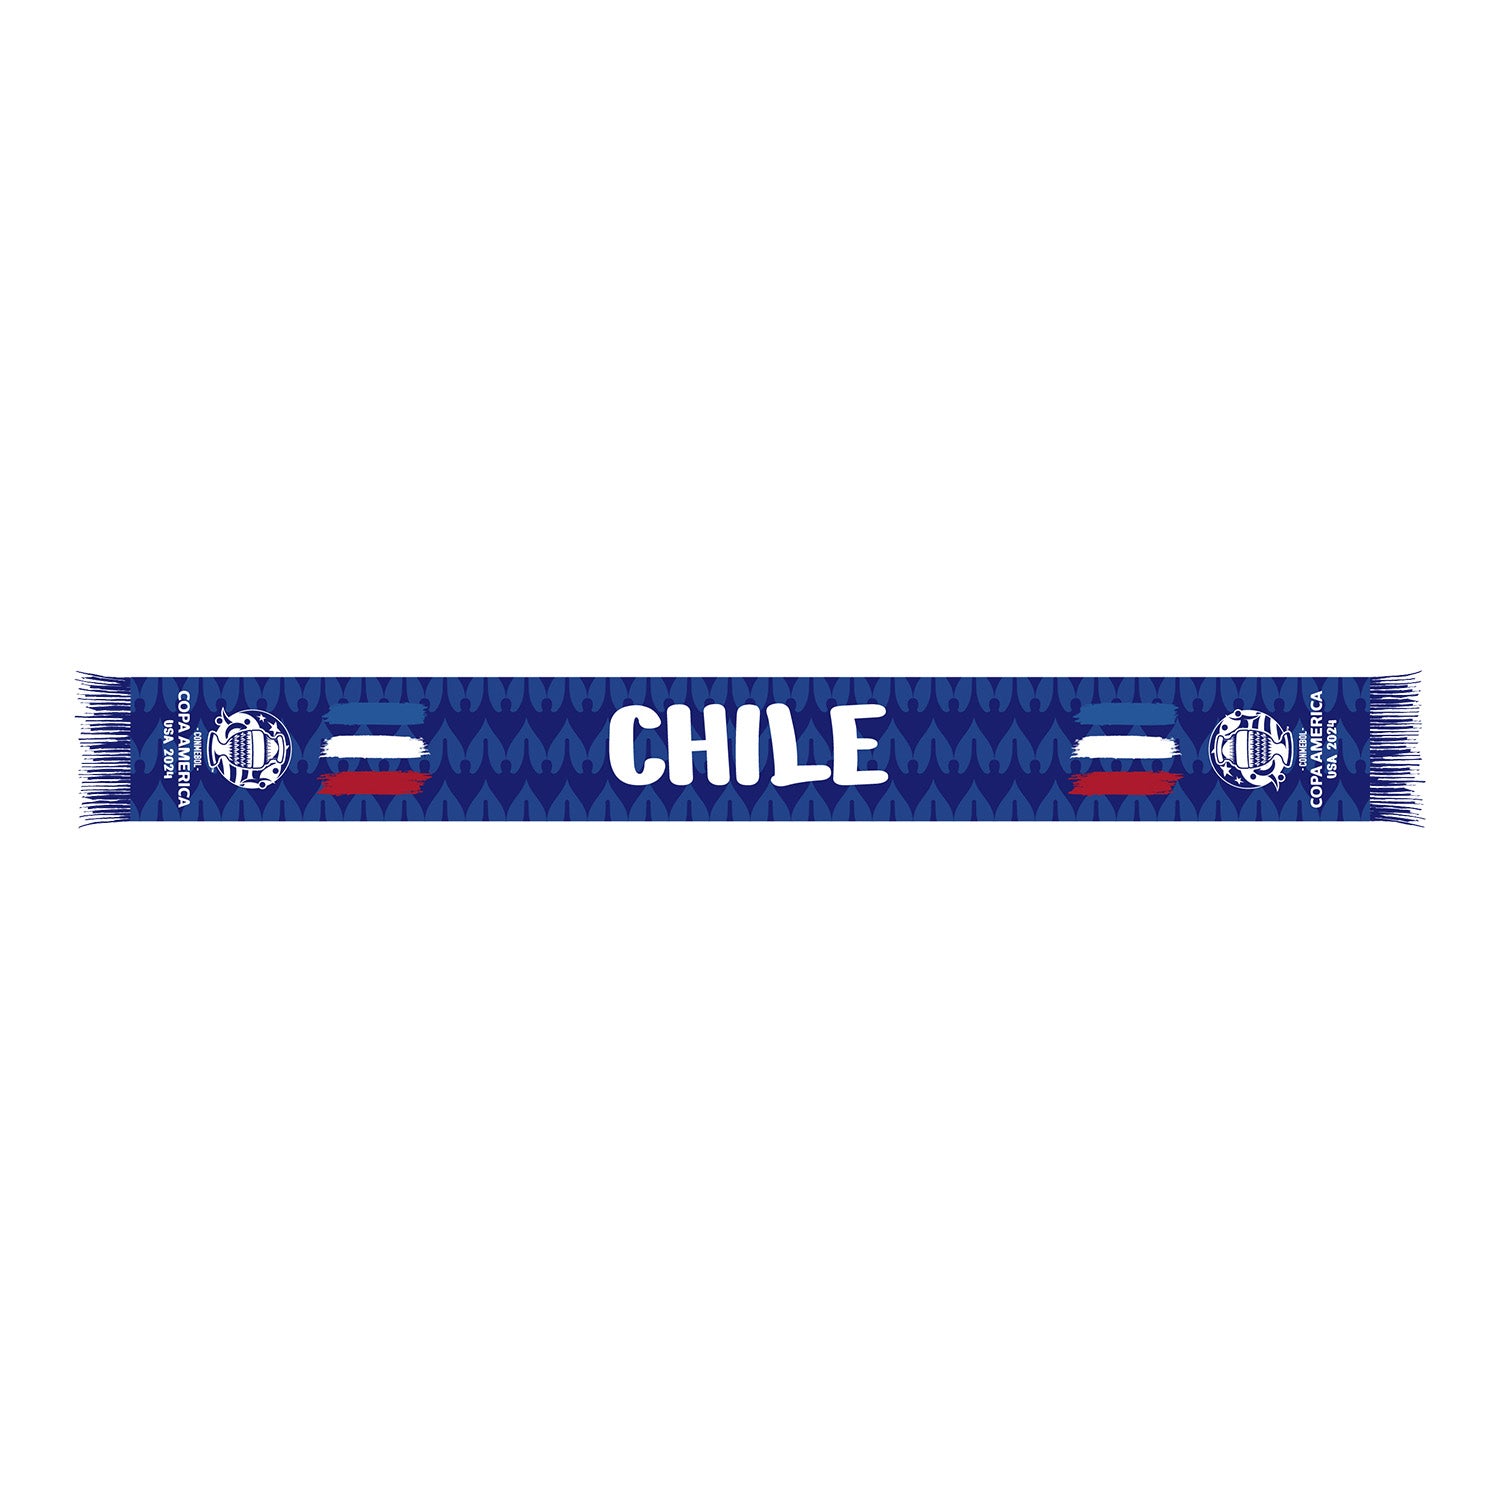 Chile COPA America Scarf - Back View